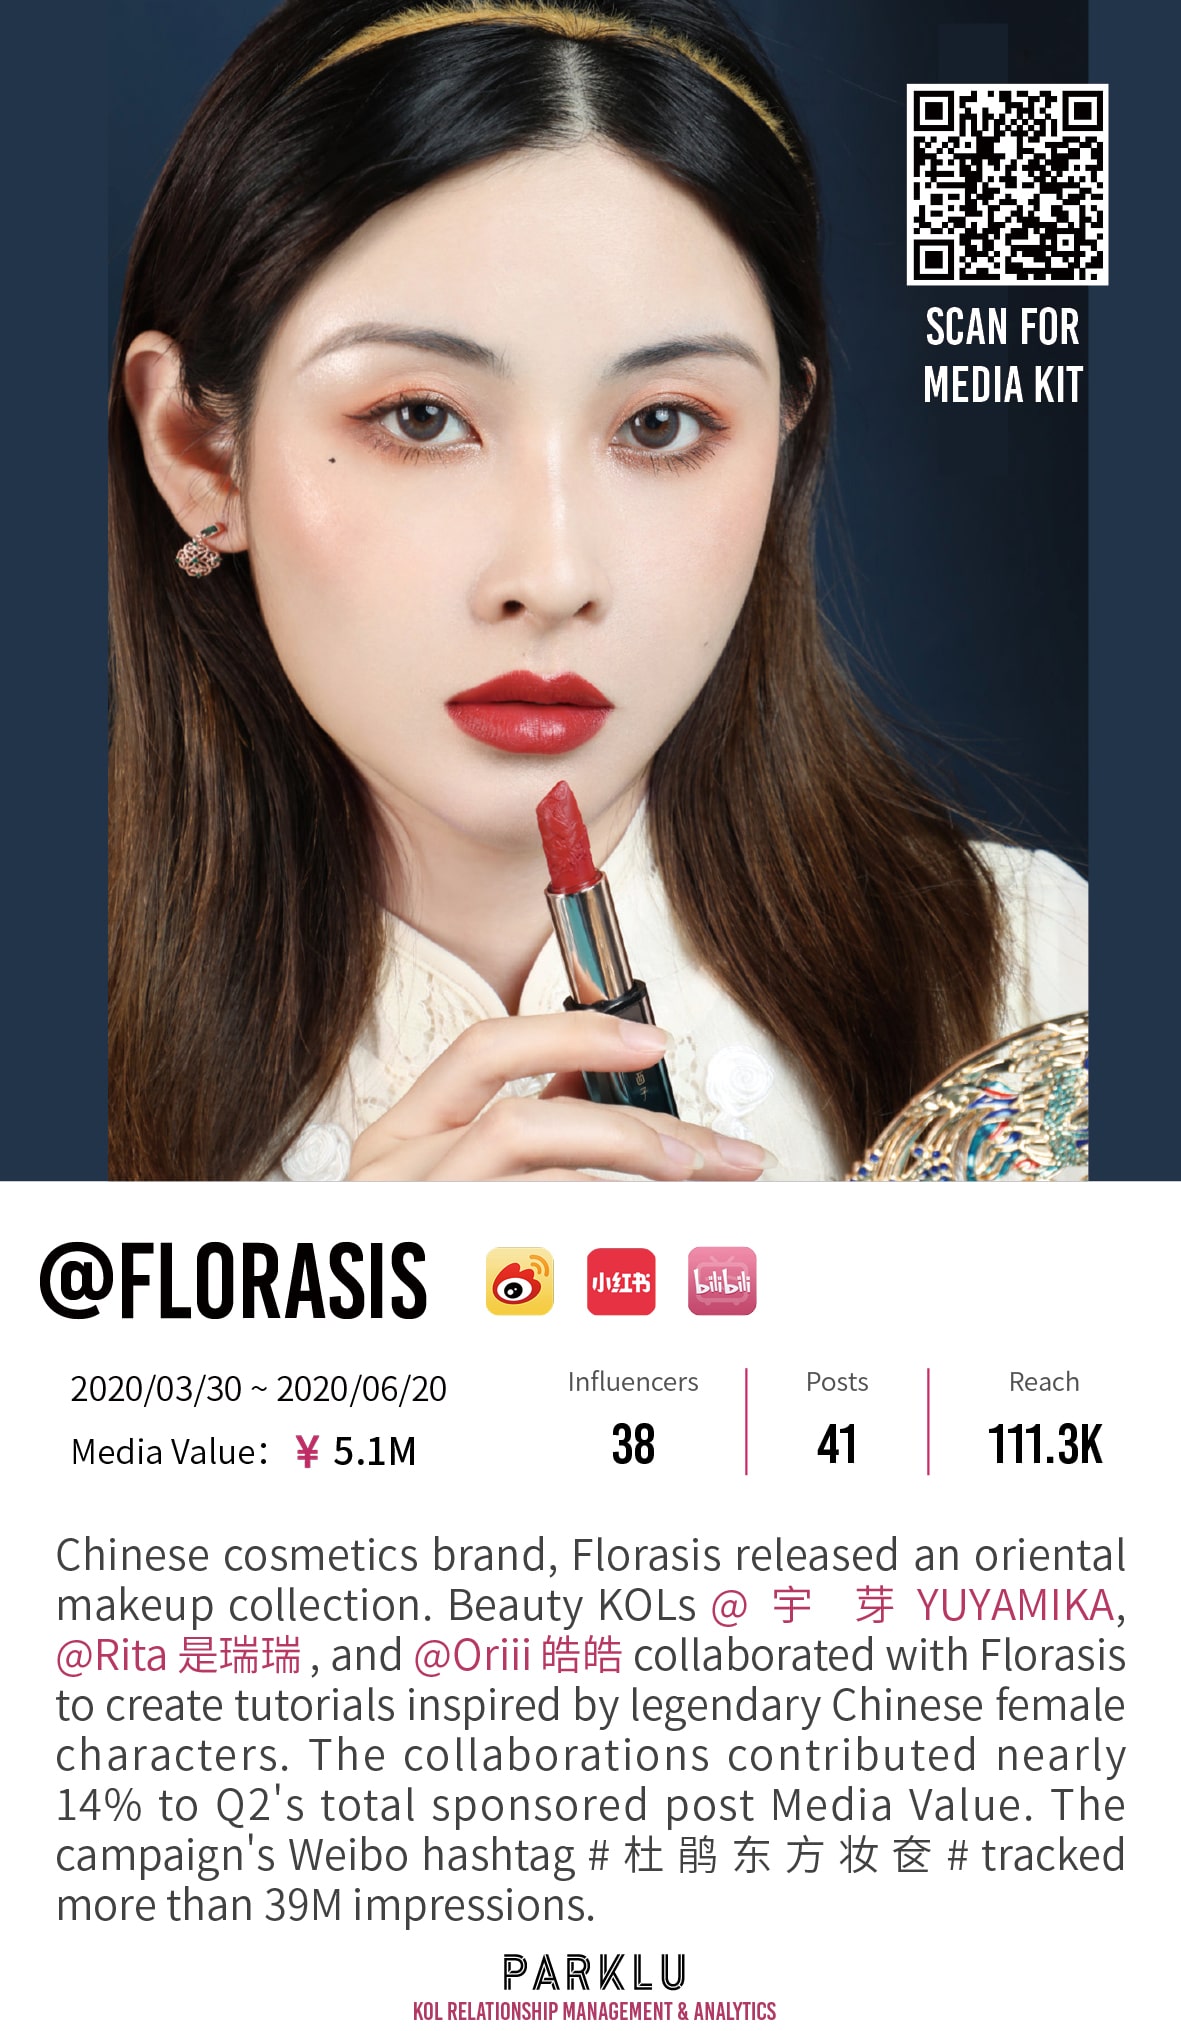 Florasis makeup collection